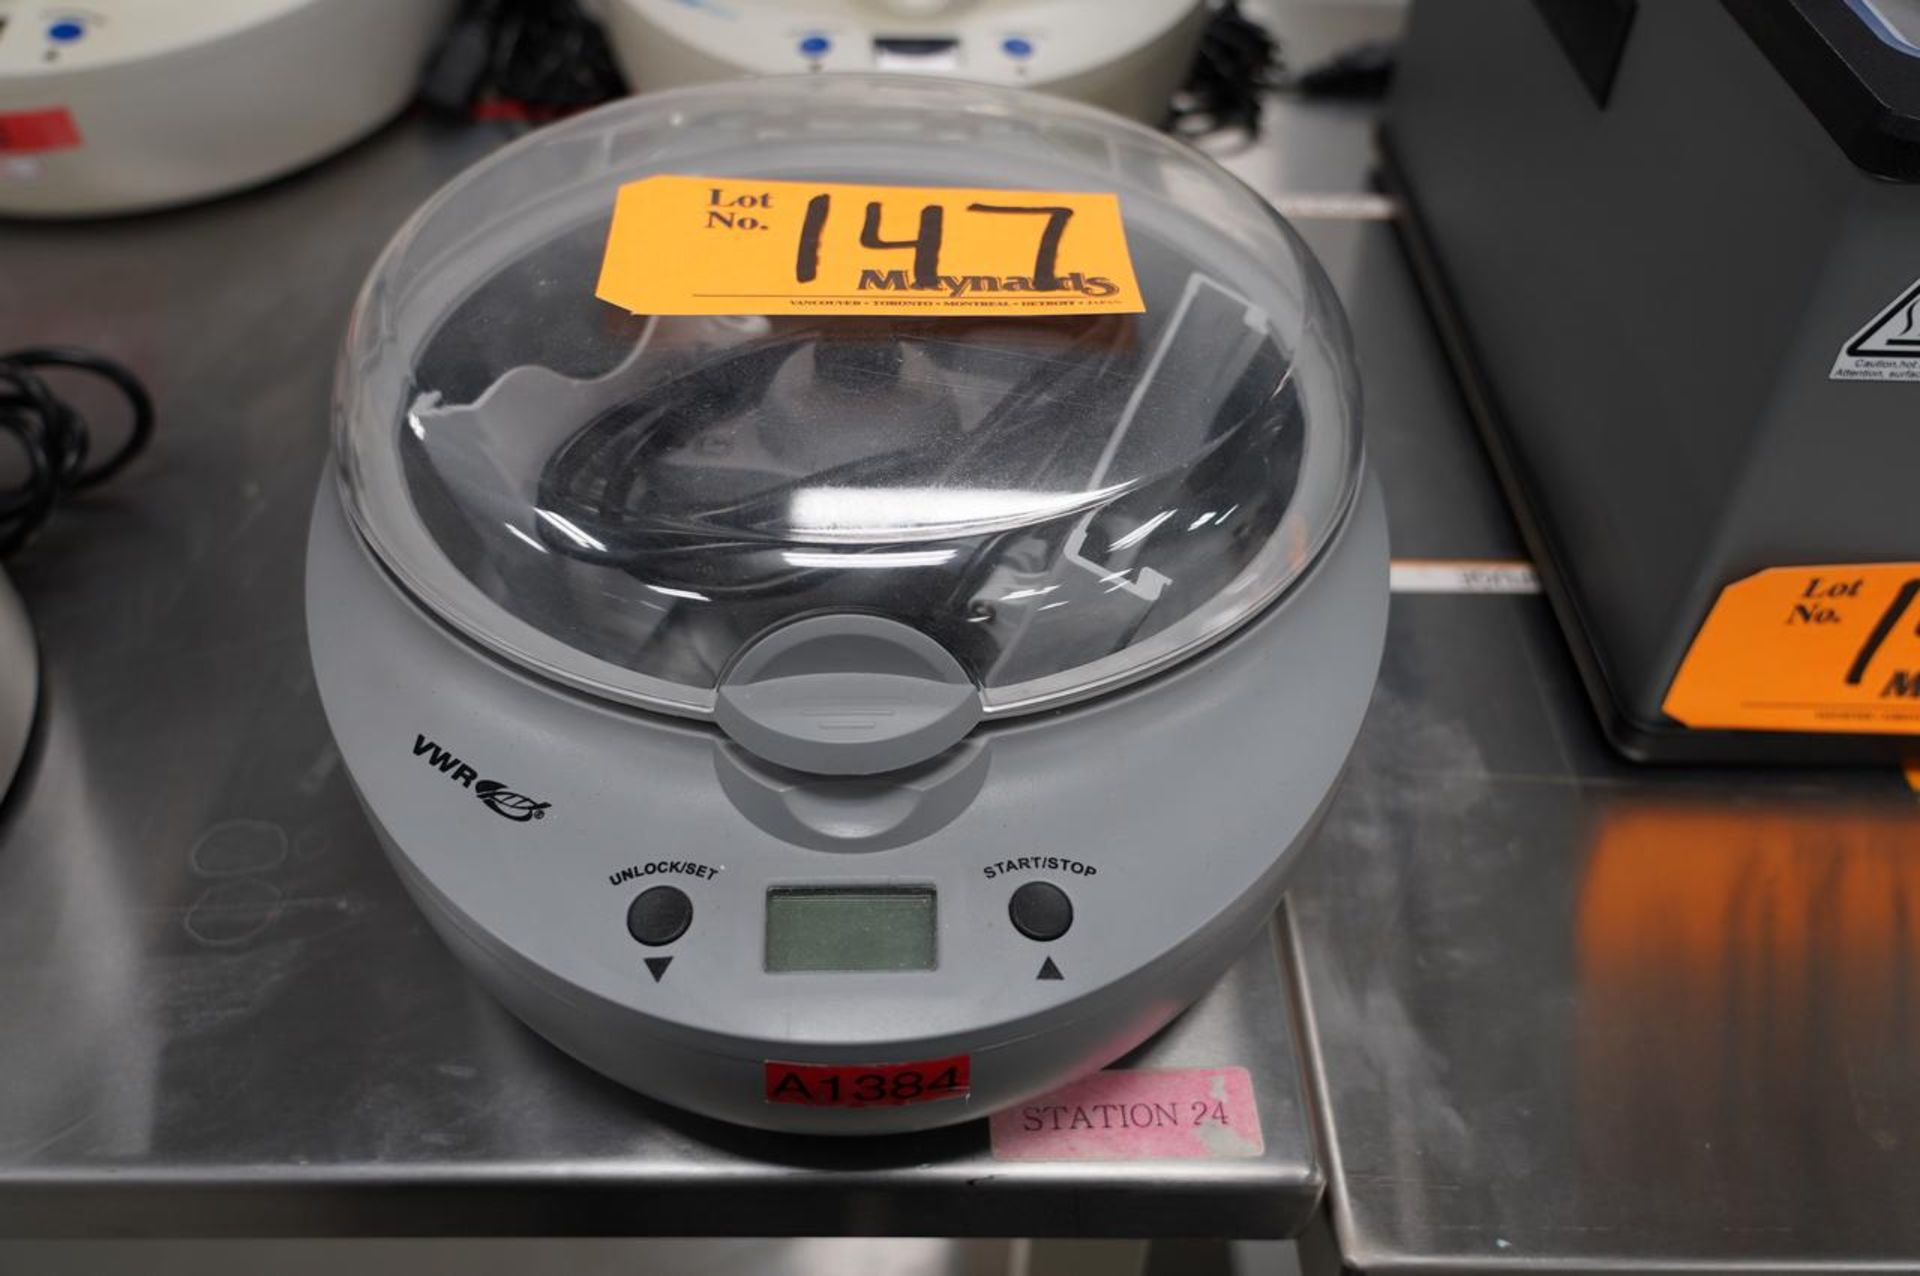 VWR C2001 Platefuge Microplate Centrifuge